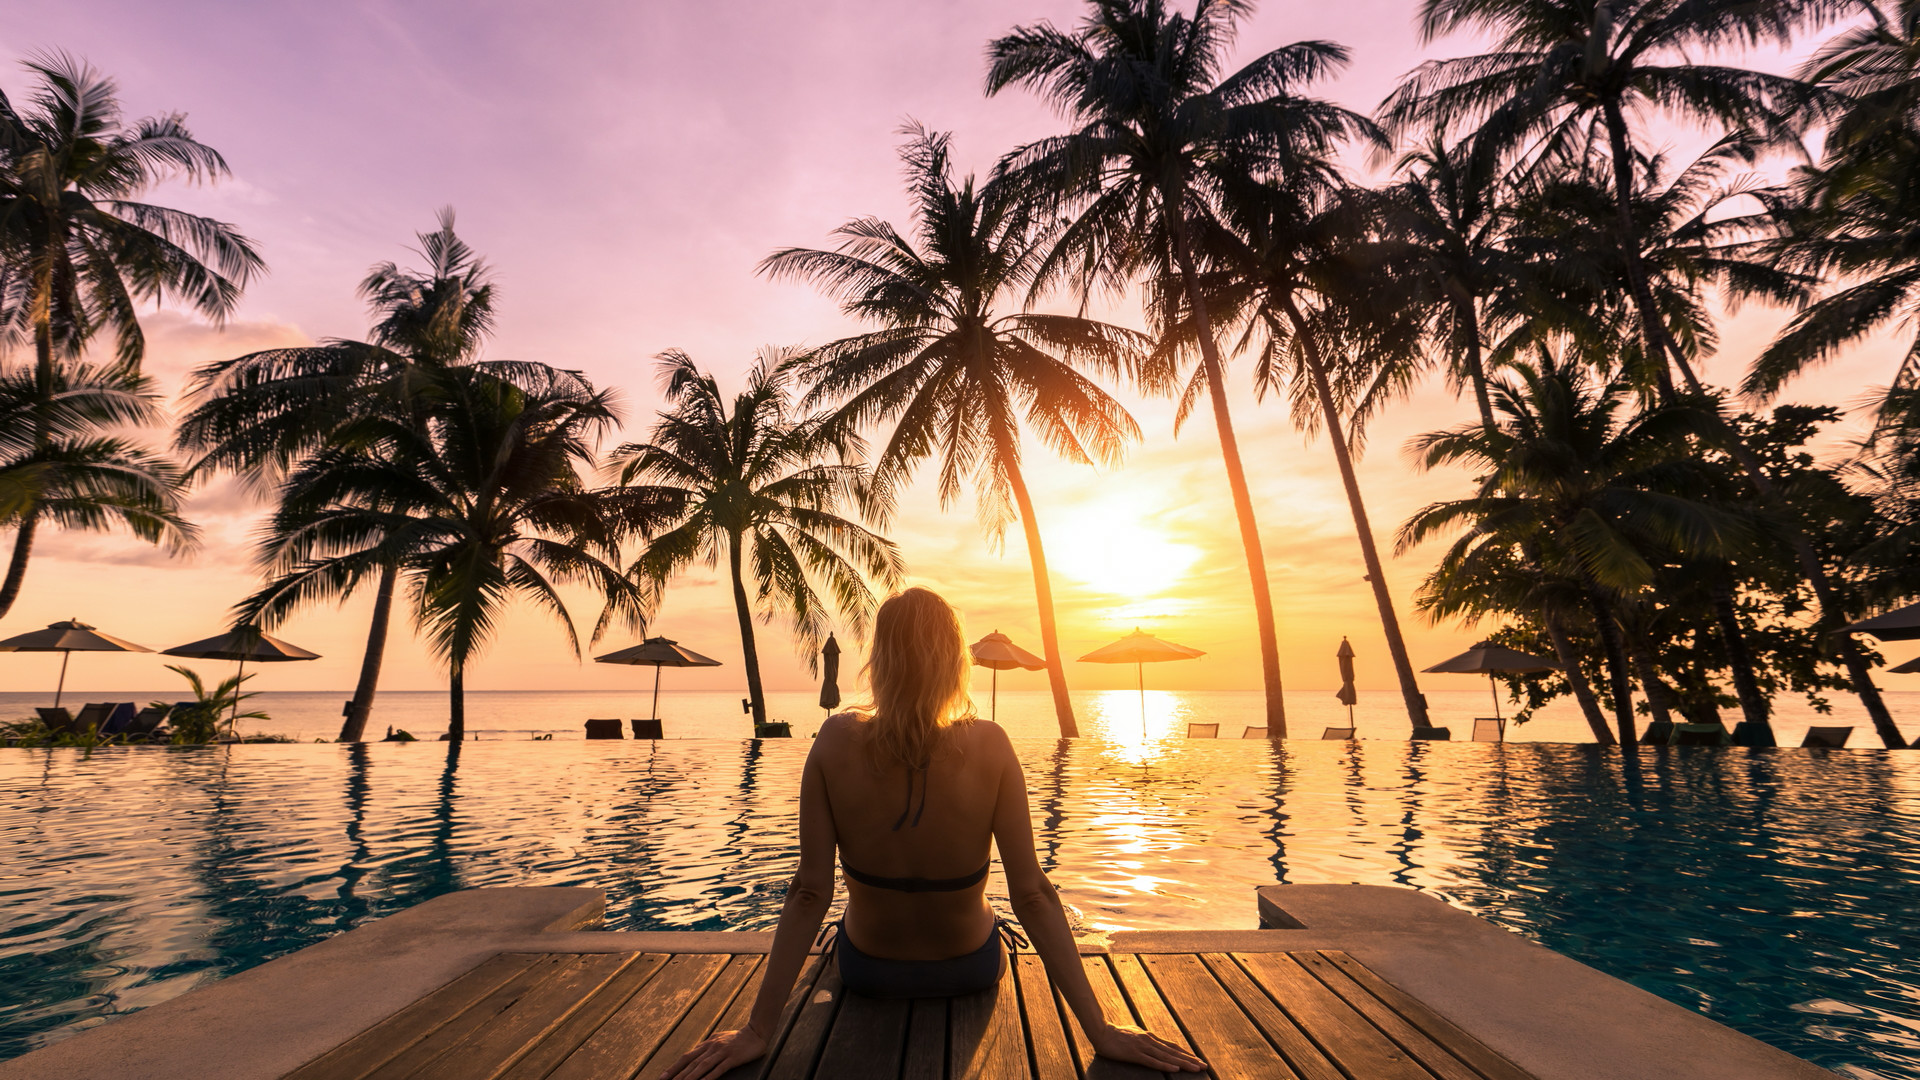 坐在海边木栈道上透过椰树看夕阳的欧美美女电脑壁纸